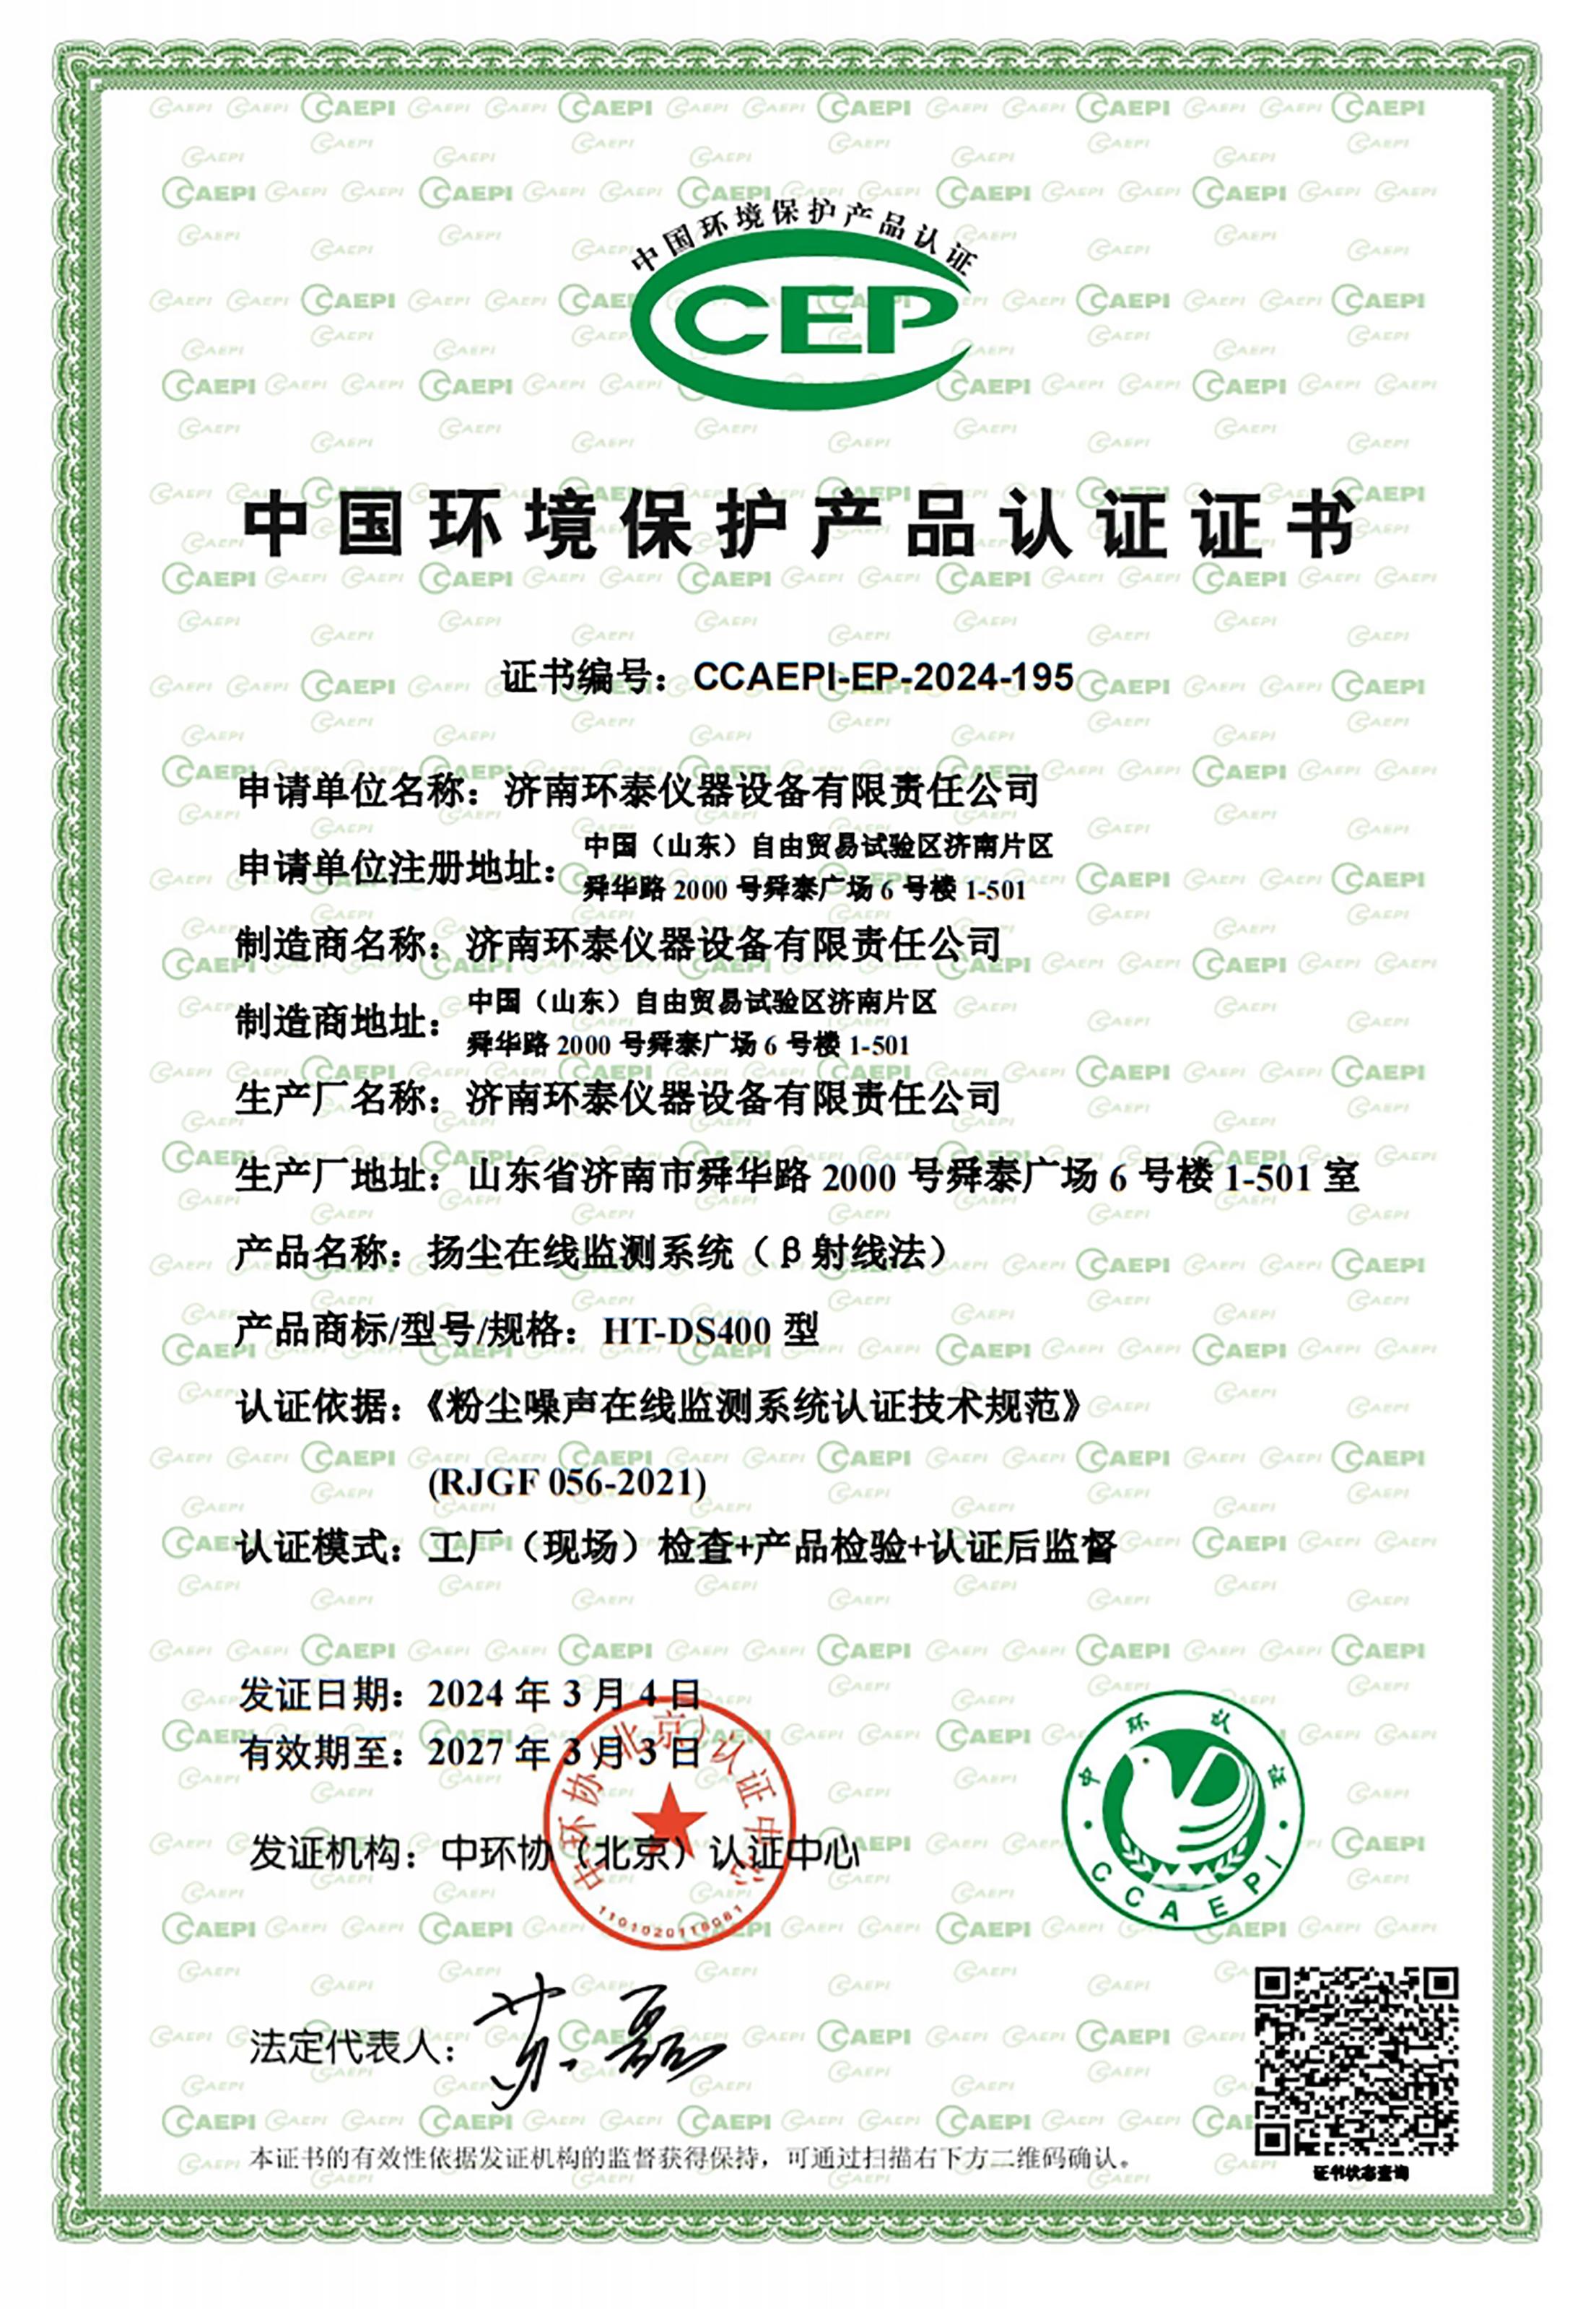 β射線CCEP中國環境保護產品認證證書.jpg